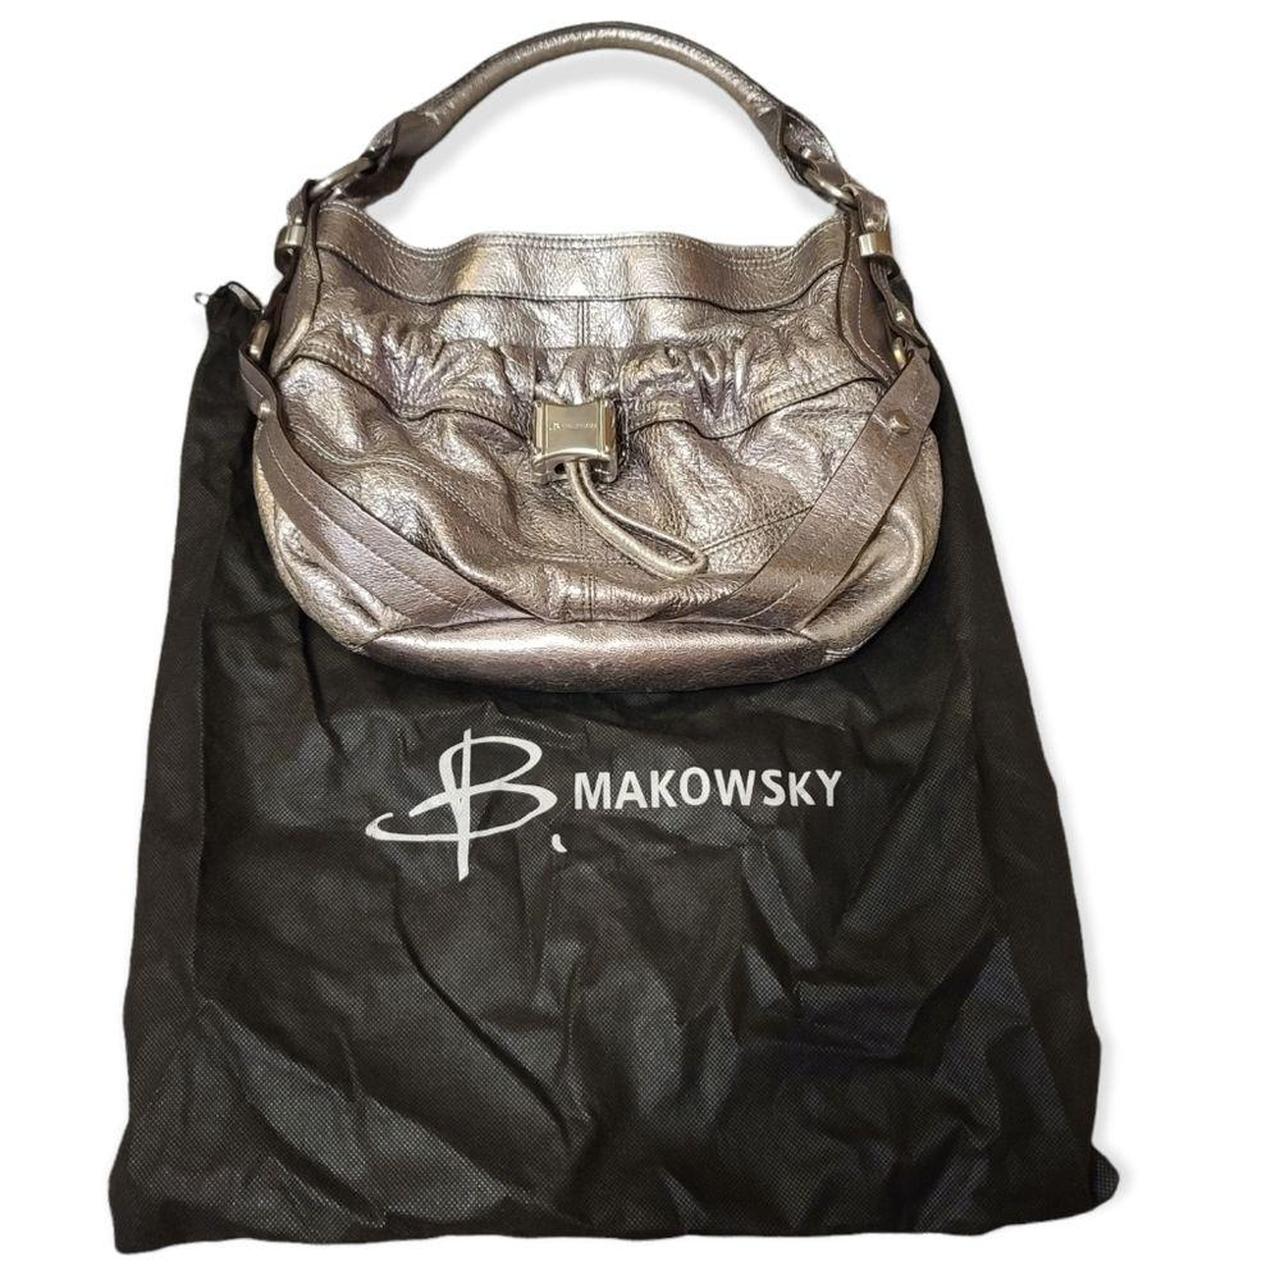 B. MAKOWSKY Black Leather Zip Top Fringed Shoulder Bag Purse - ShopperBoard